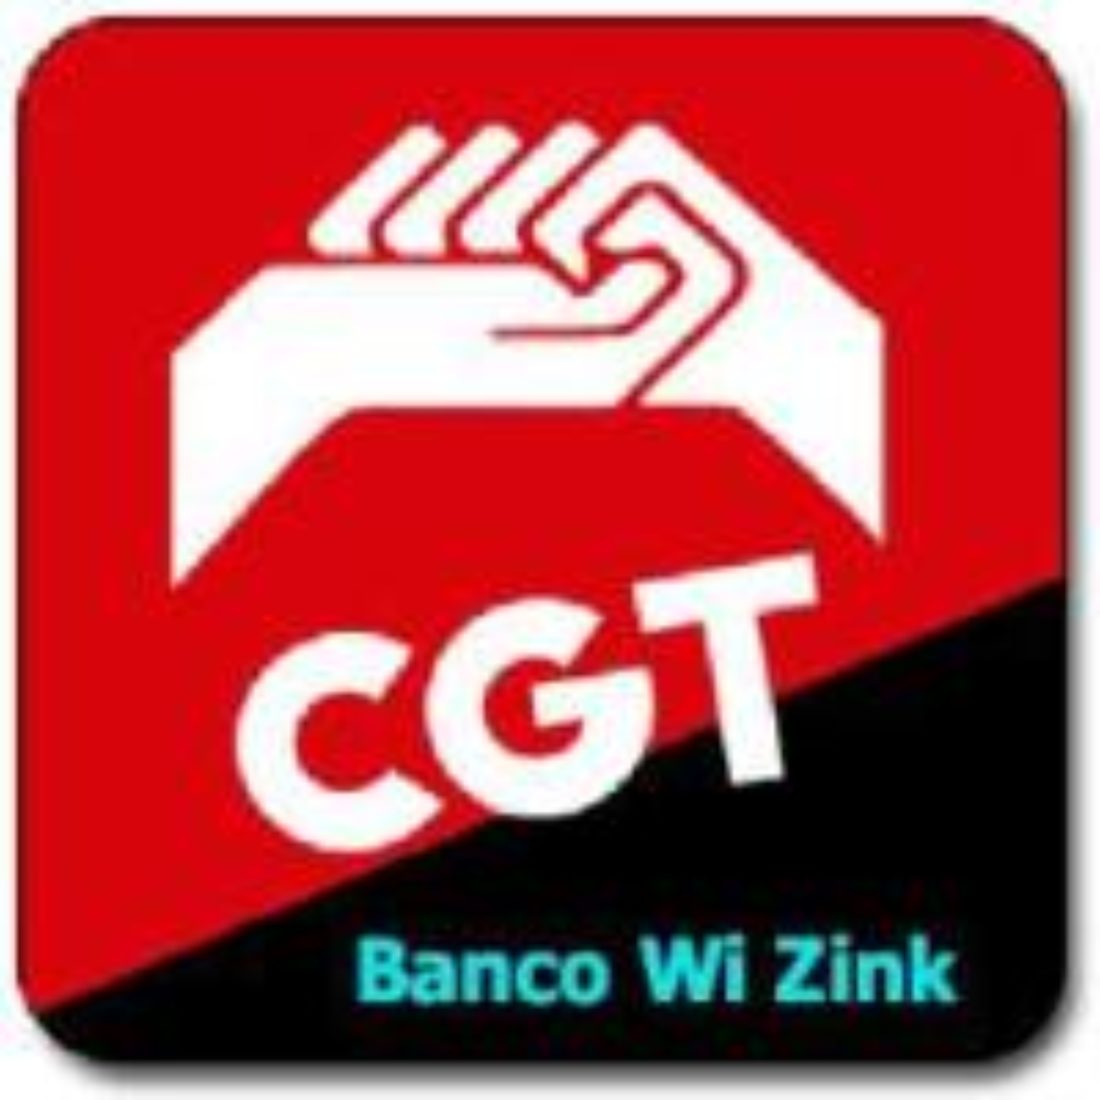 Wizink pretende convertir el Registro de Jornada en un “Control de tiempos” con el que blanquear las horas extraordinarias fraudulentas